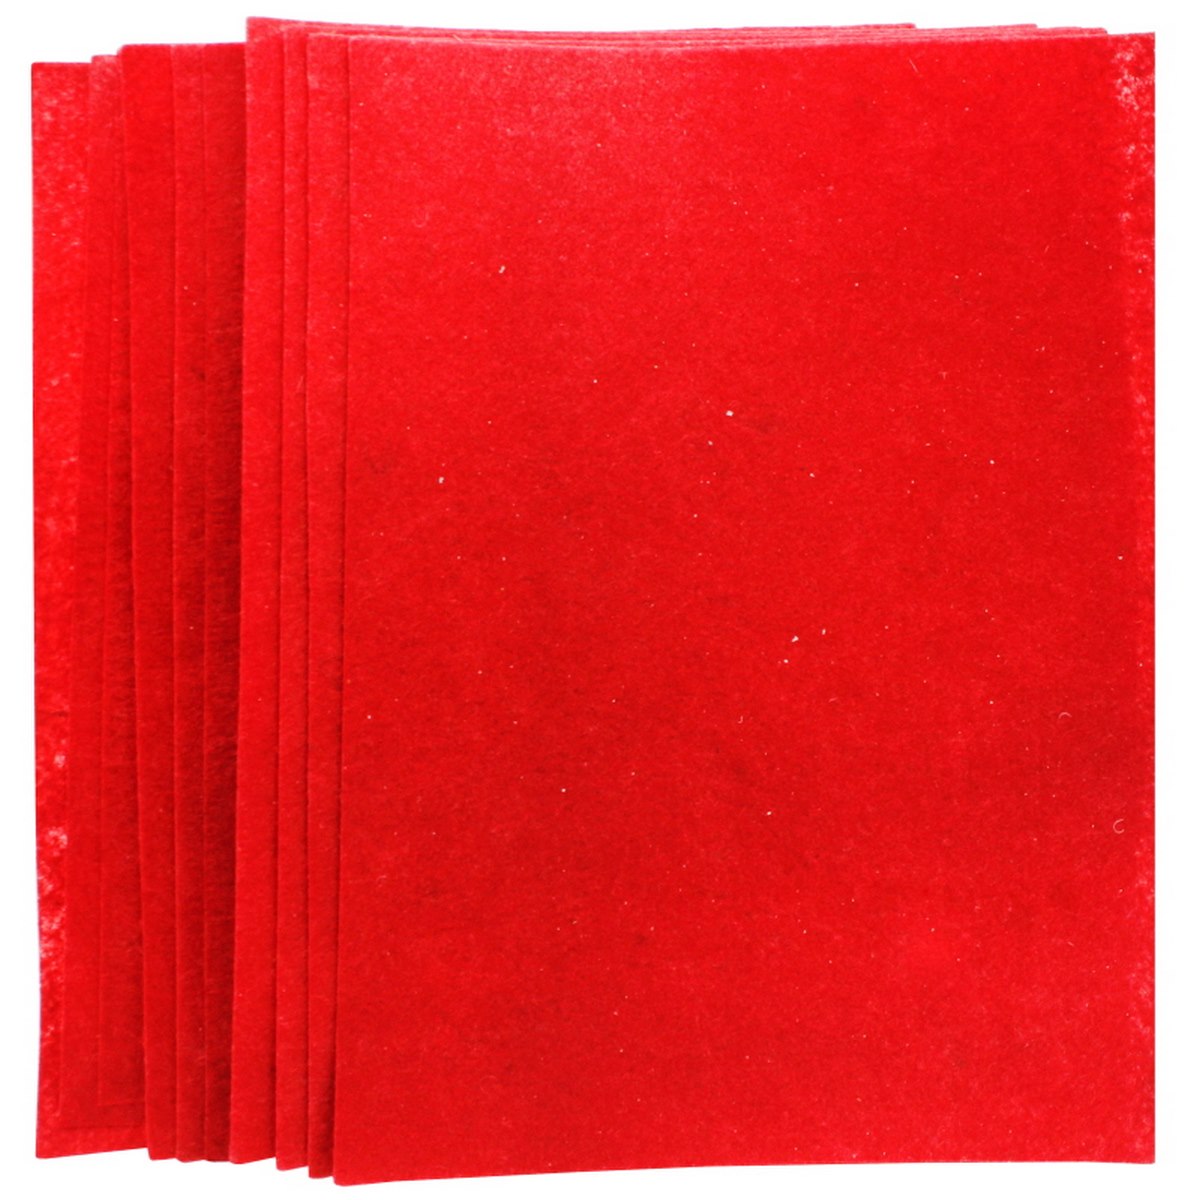 jags-mumbai Non-Woven & Felt Sheets A4 Nonwoven Felt Sheet Dark Red 052 ANFSD052